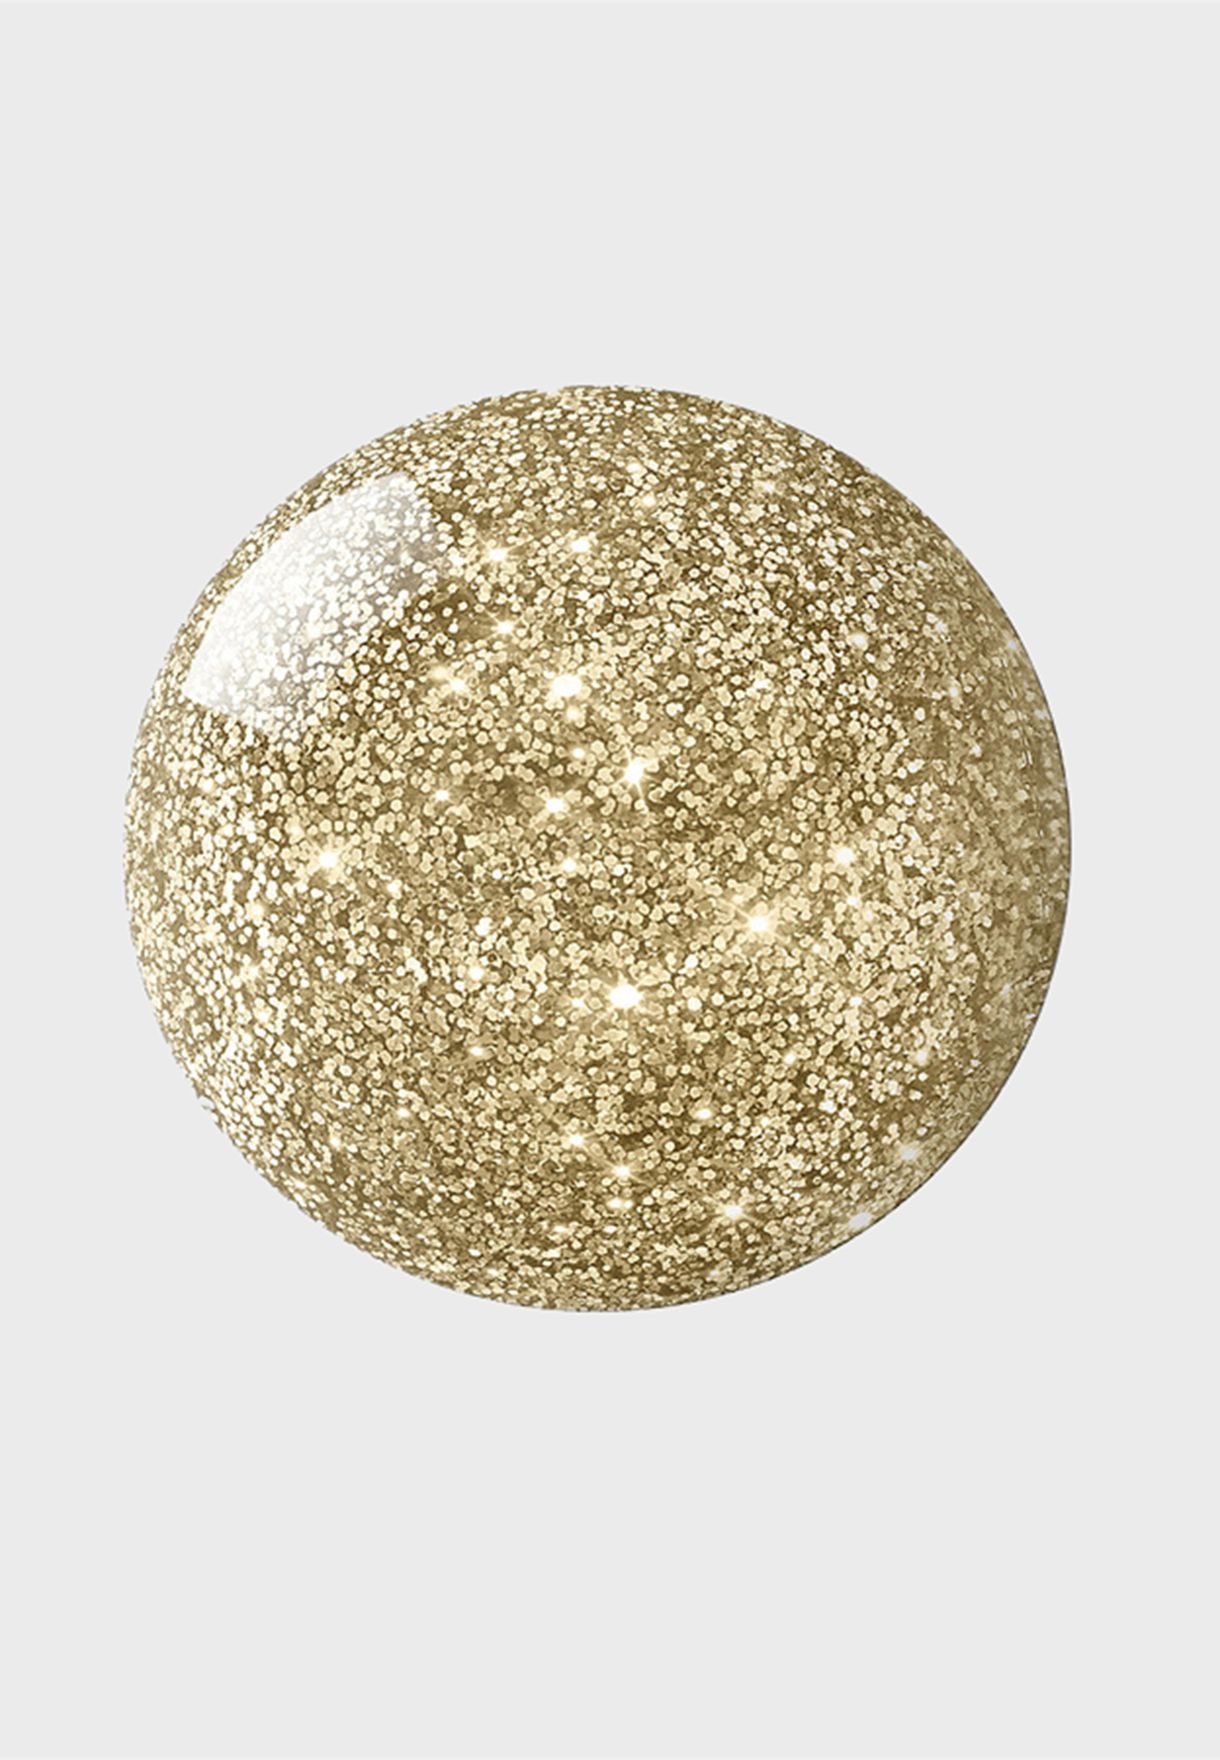 Pixie Dust Nail Lacquer - Romantic Gold